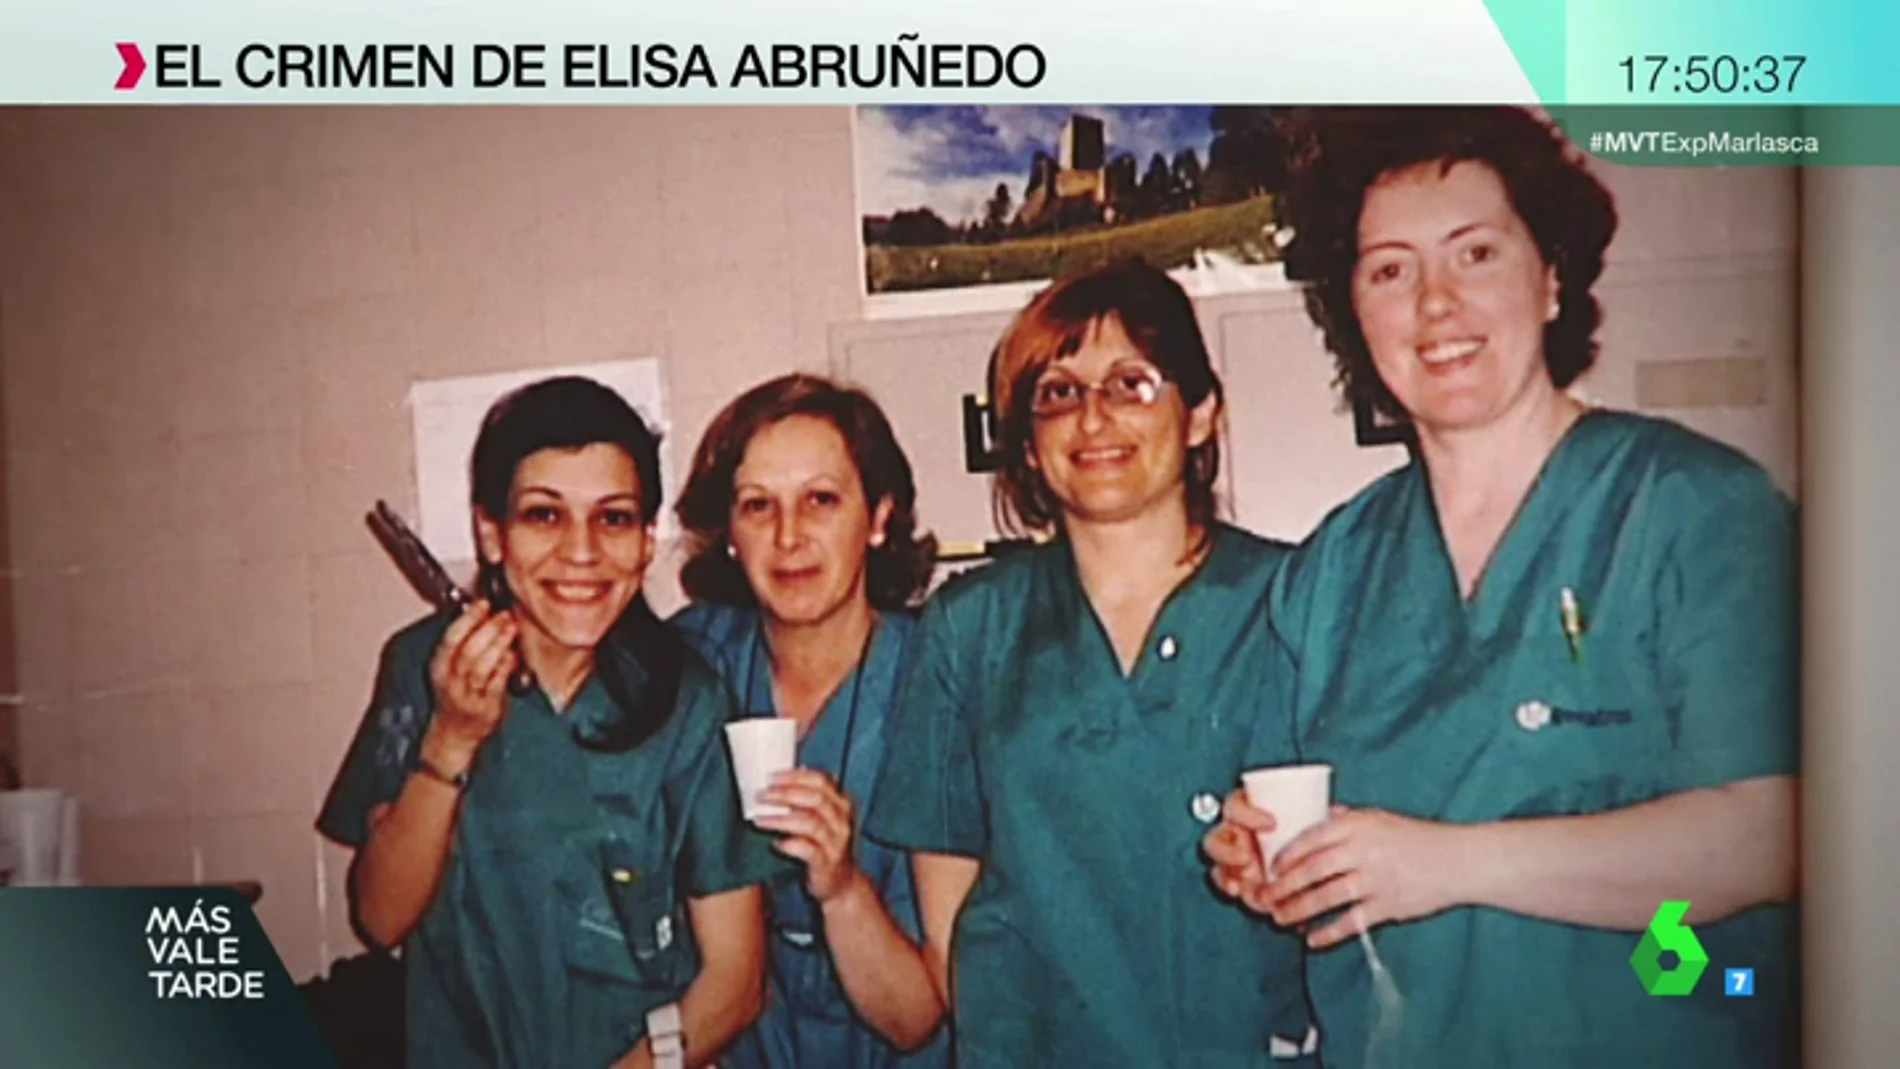 Elisa Abruñedo tenía 46 años cuando fue asesinada